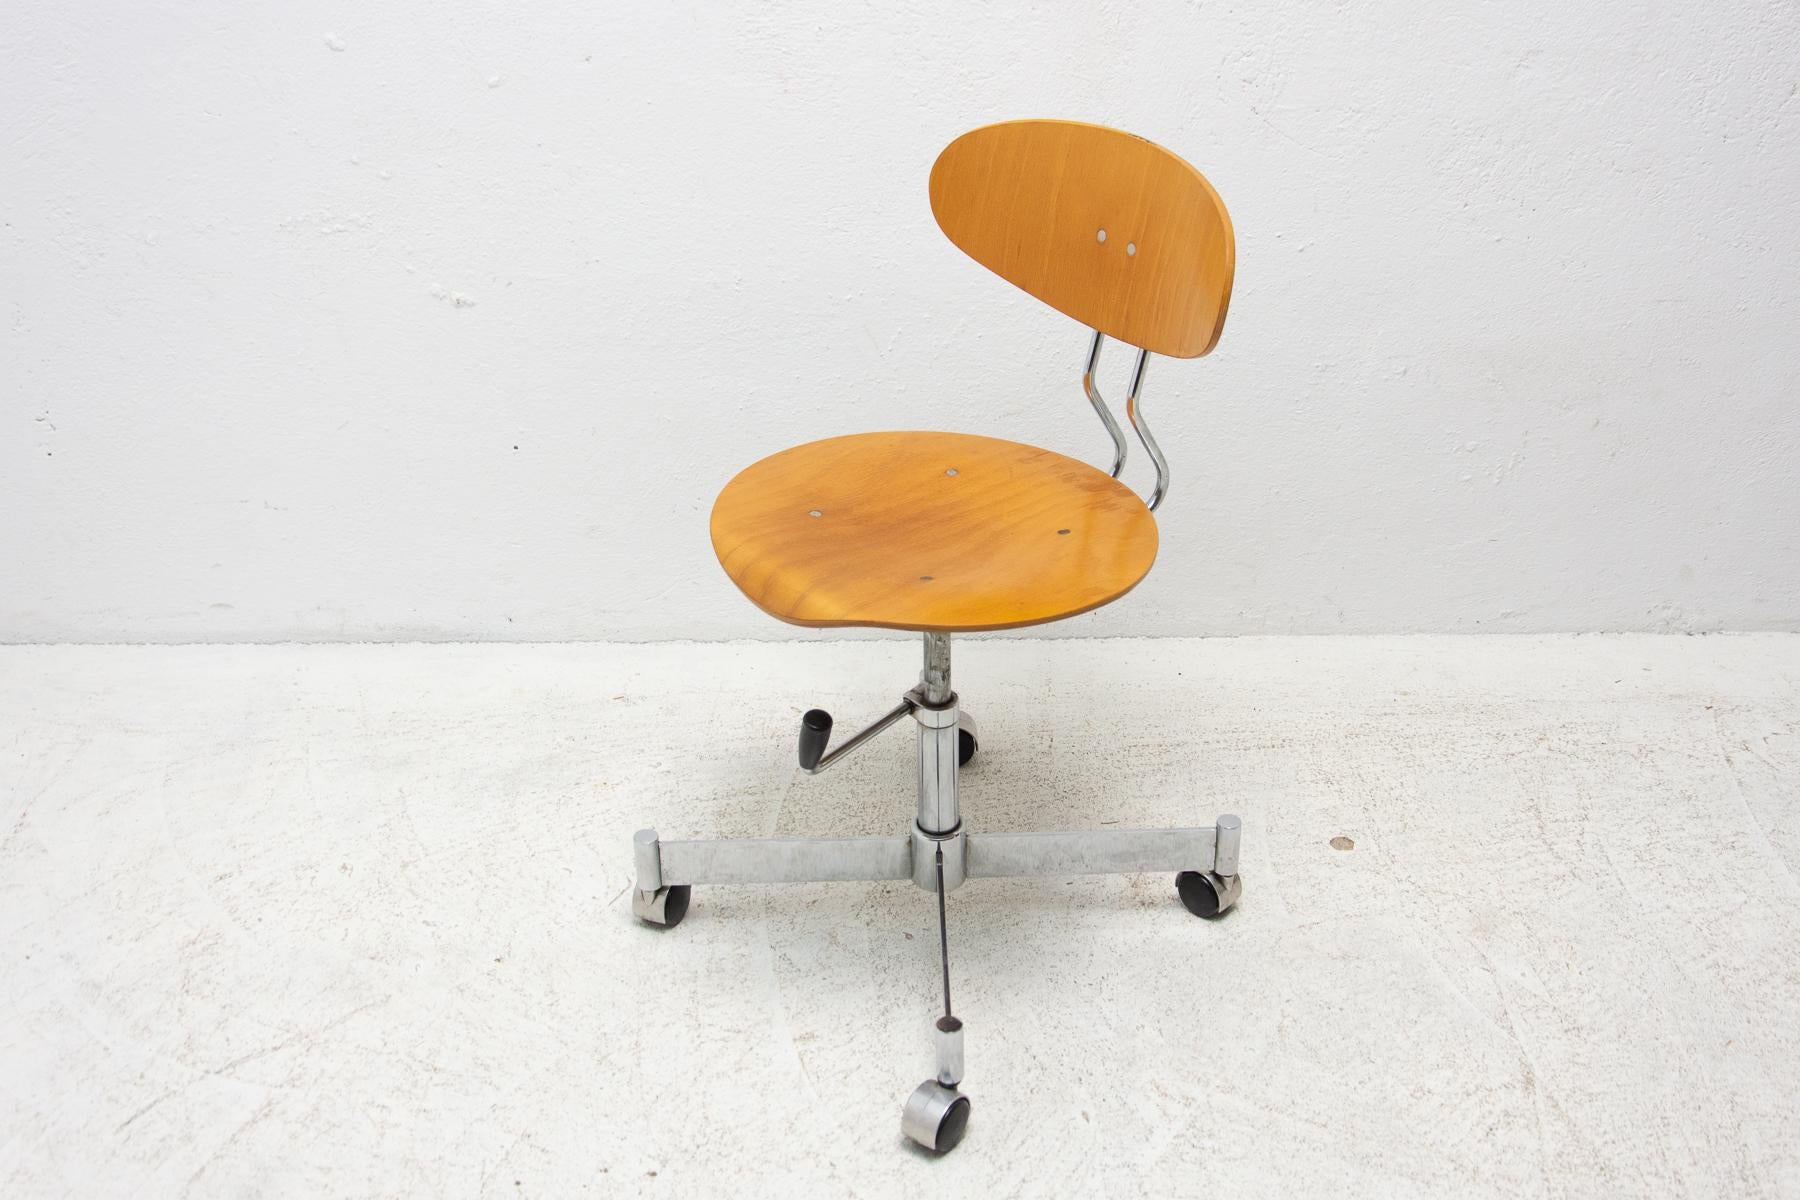 Czech Vintage Industrial Swivel Work Desk Chair by Kovona, 1950's